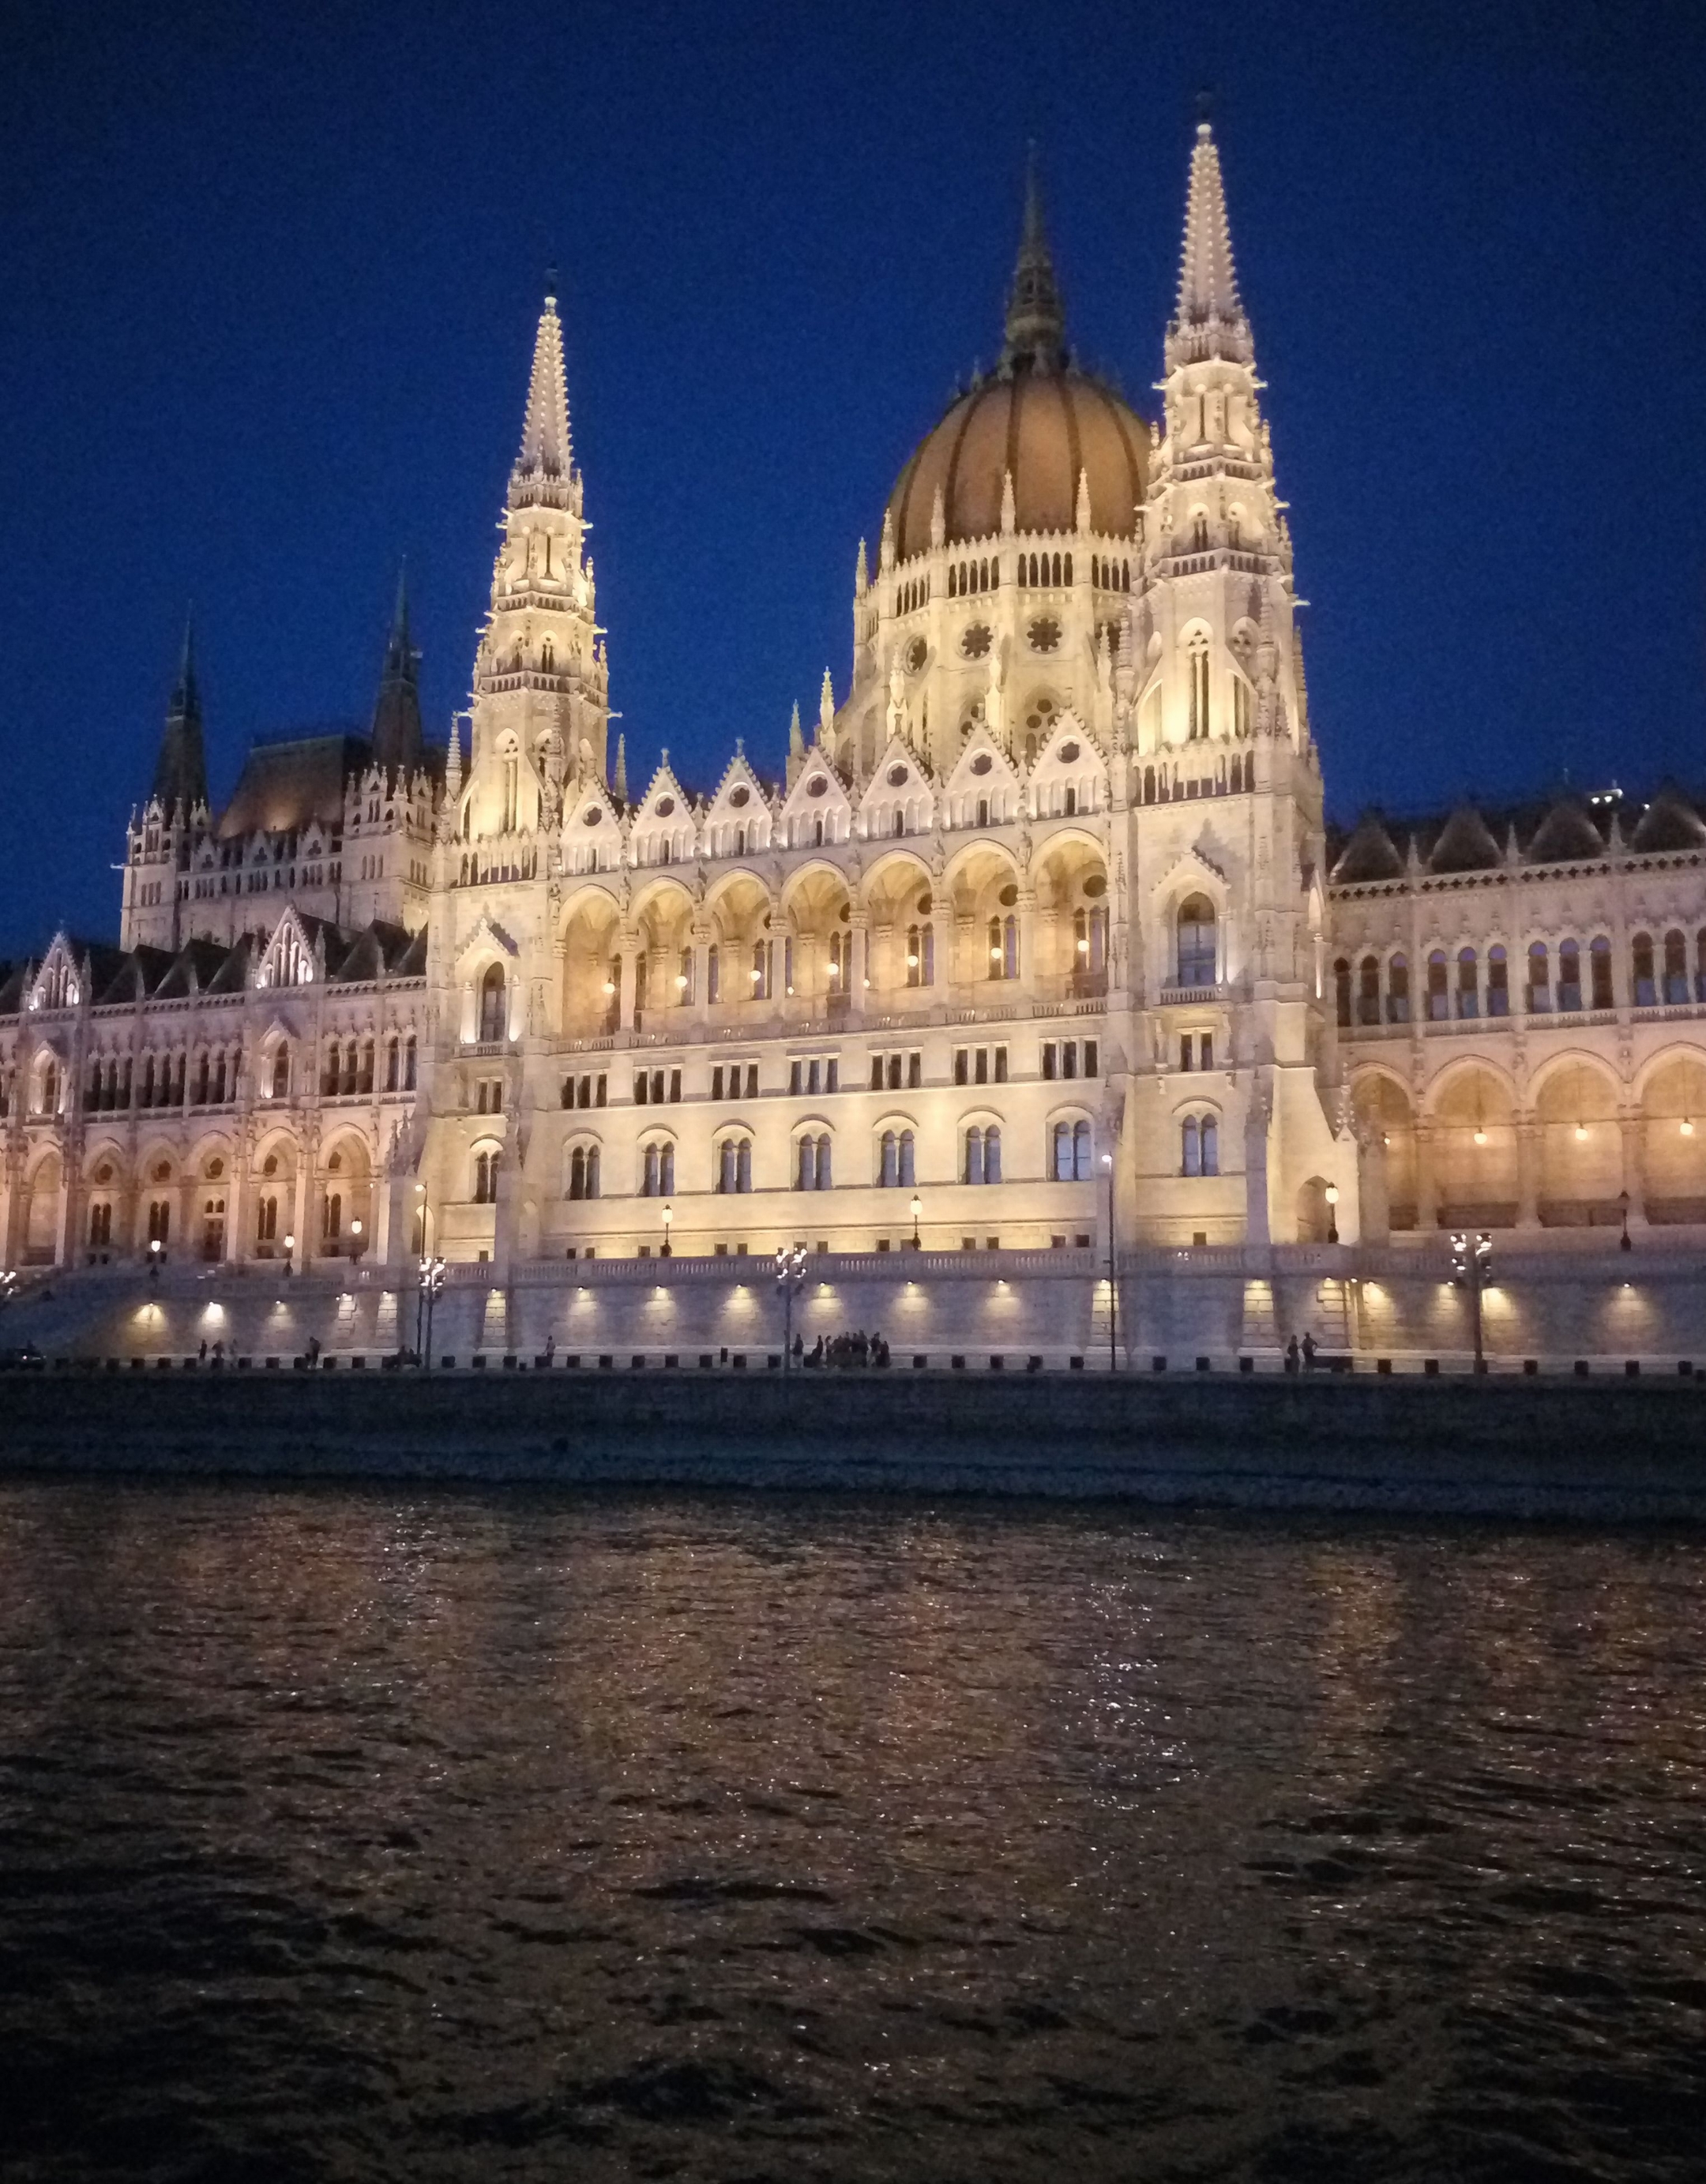 匈牙利国会大厦的宏伟壮观在欧洲建筑里可谓首屈一指.